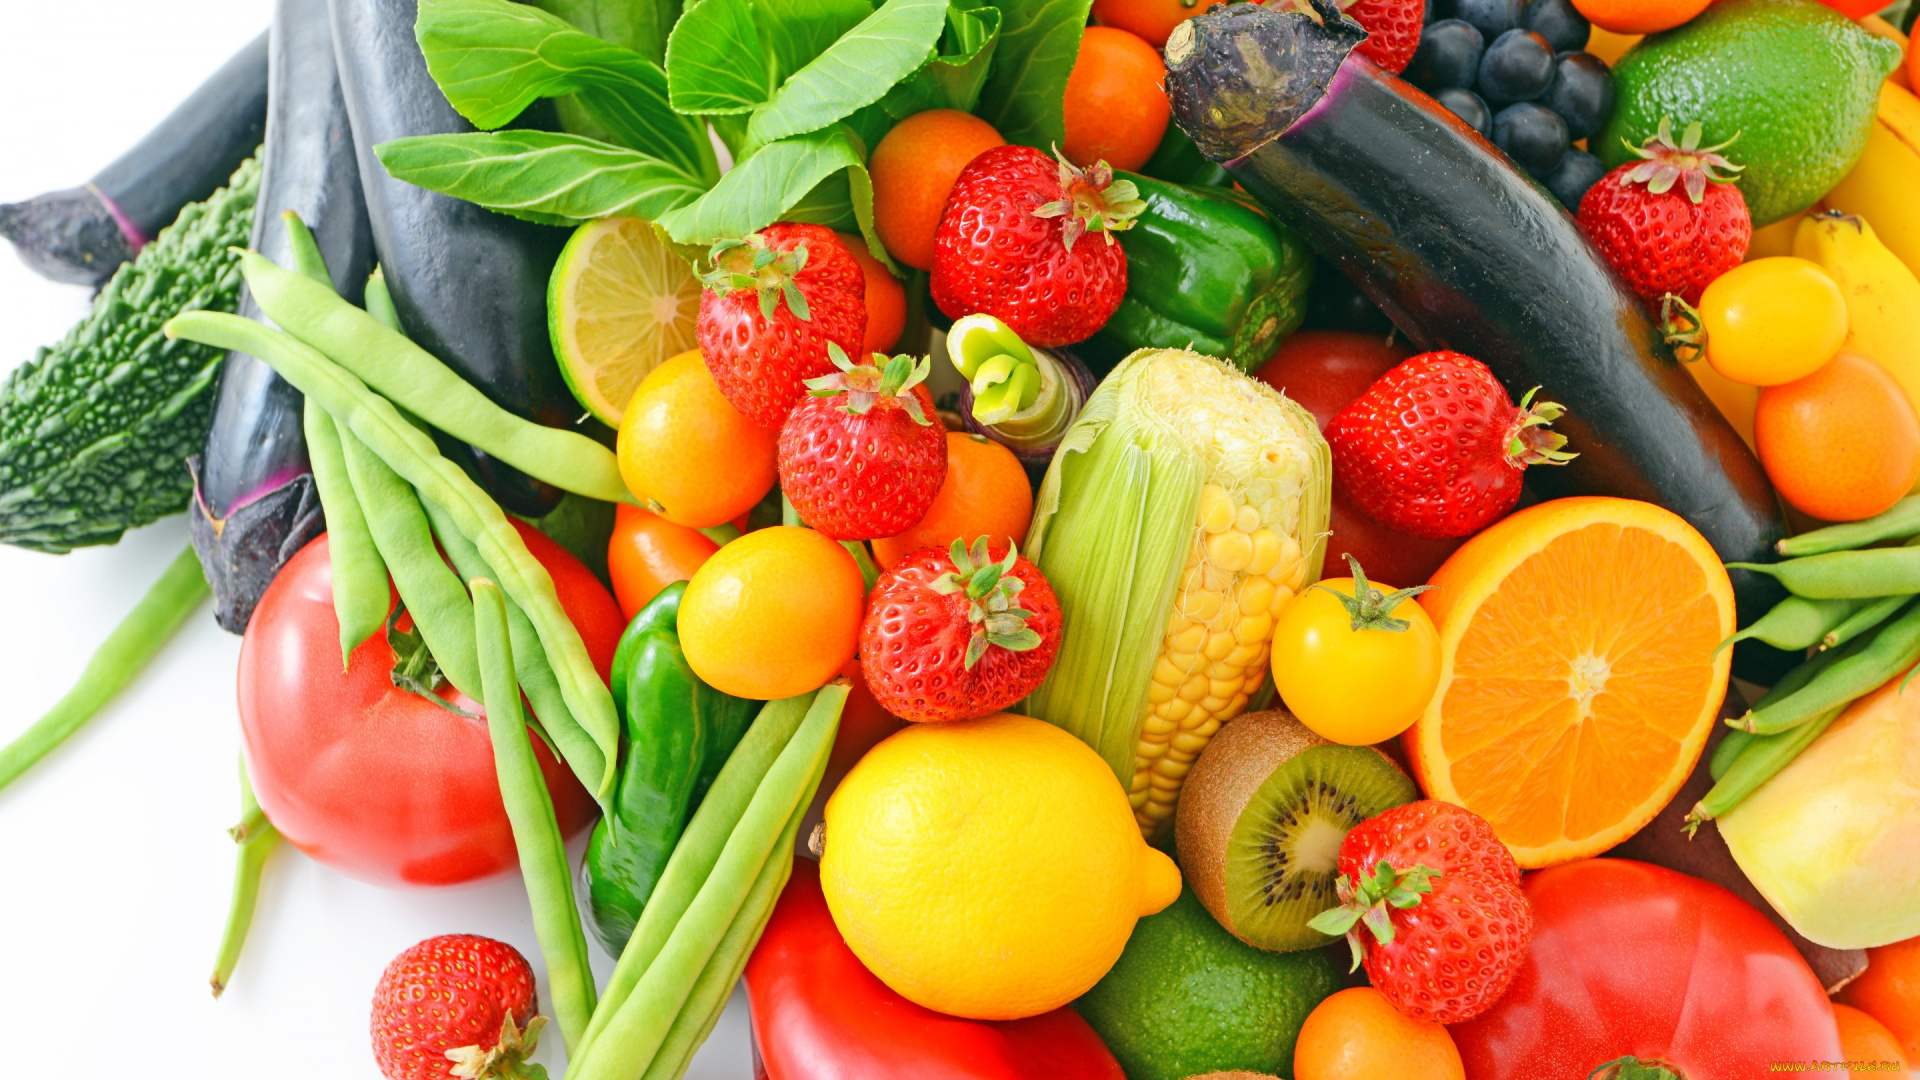 еда, фрукты, и, овощи, вместе, fresh, апельсин, ягоды, овощи, фрукты, киви, клубника, баклажан, кукуруза, лимоны, berries, fruits, vegetables